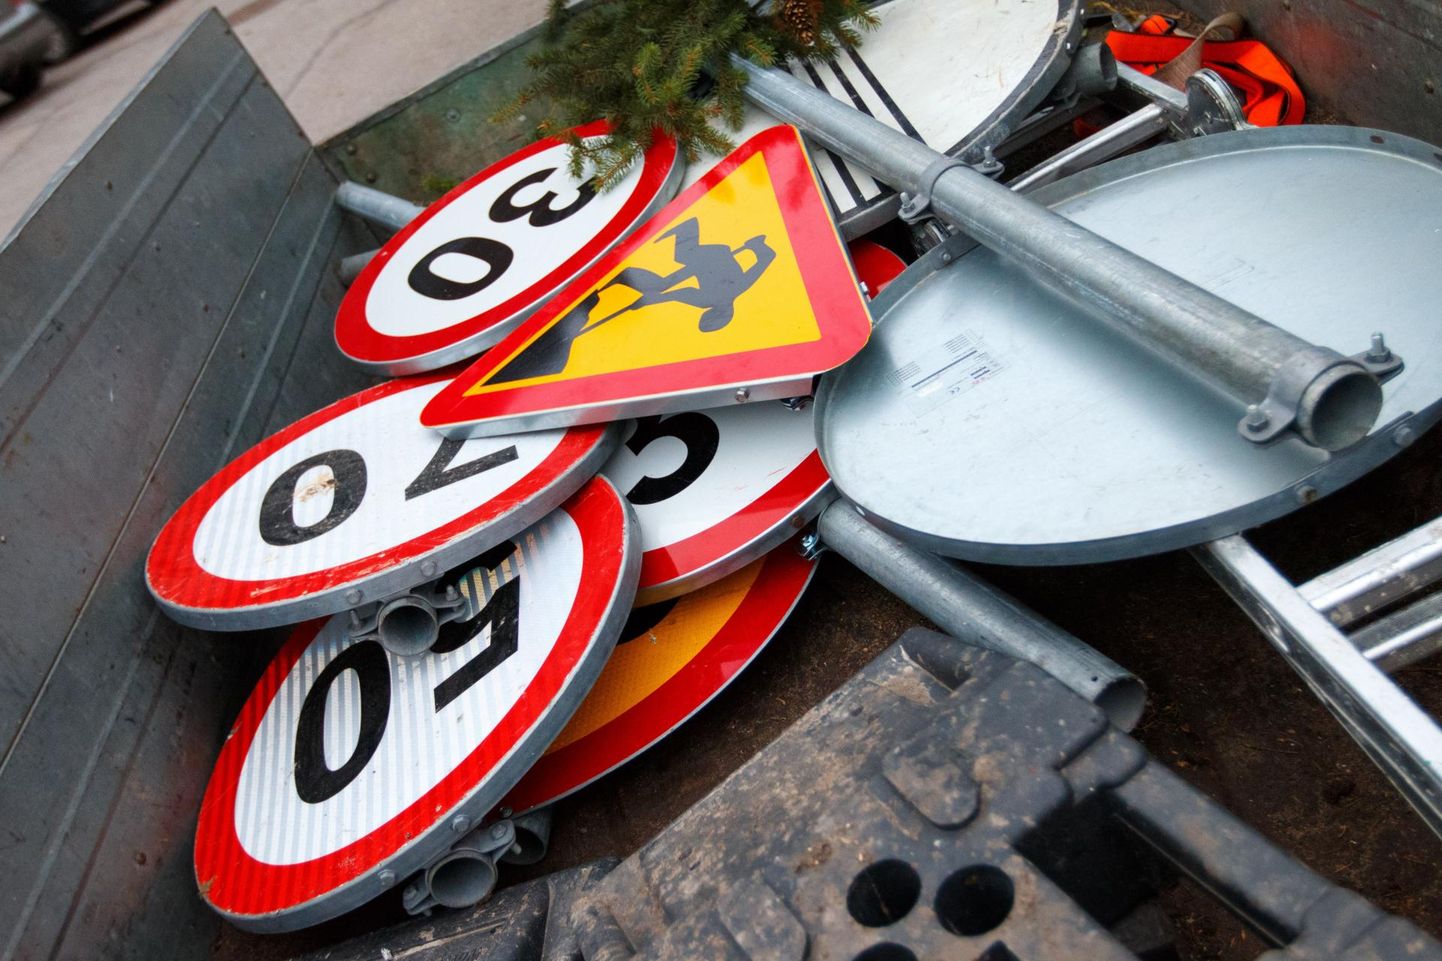 Jälgige kiirust reguleerivaid liiklusmärke ja valige ohutu sõidukiirus.